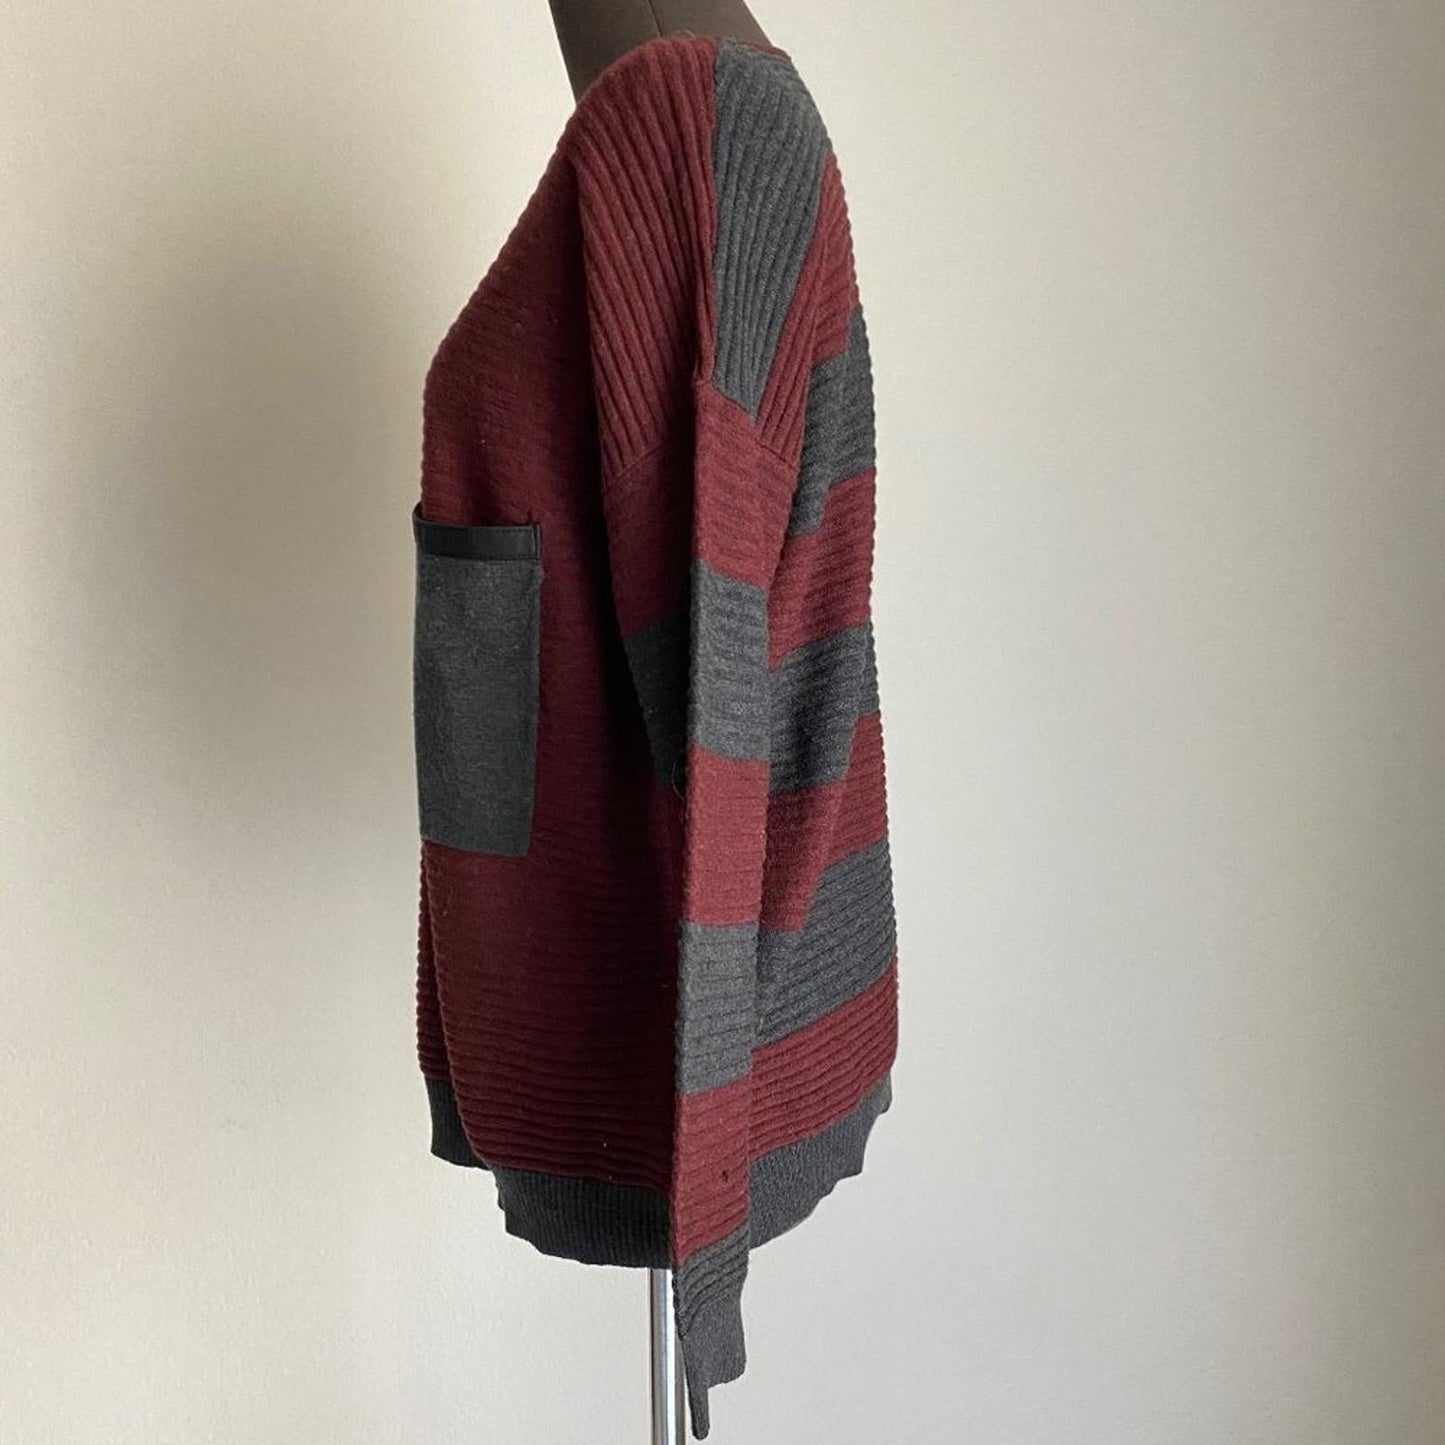 Kerisma sz S/M  long sleeve scoop neck wool sweater